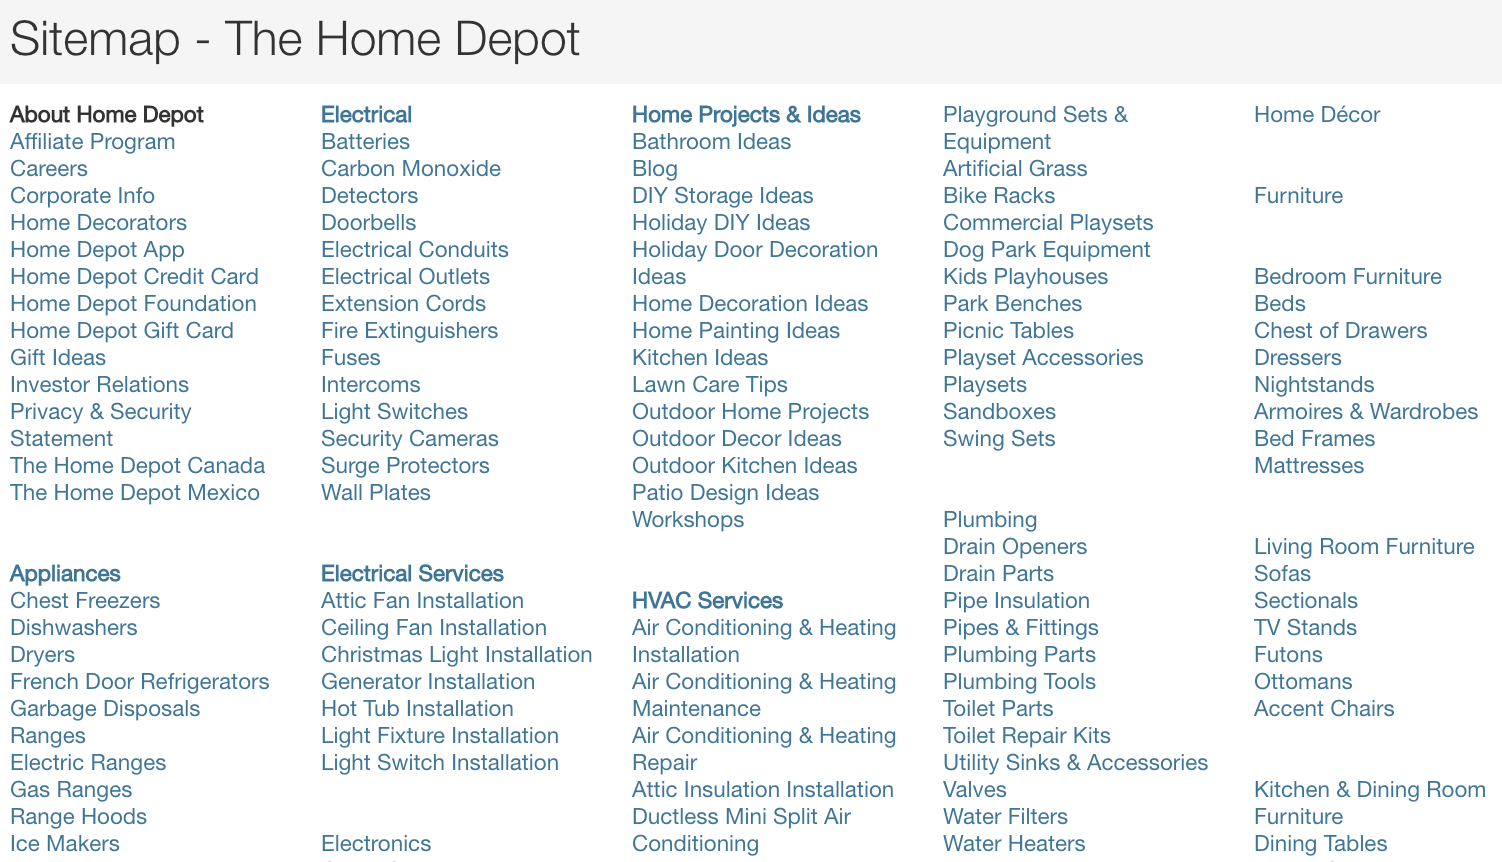 Home Depot sitemap